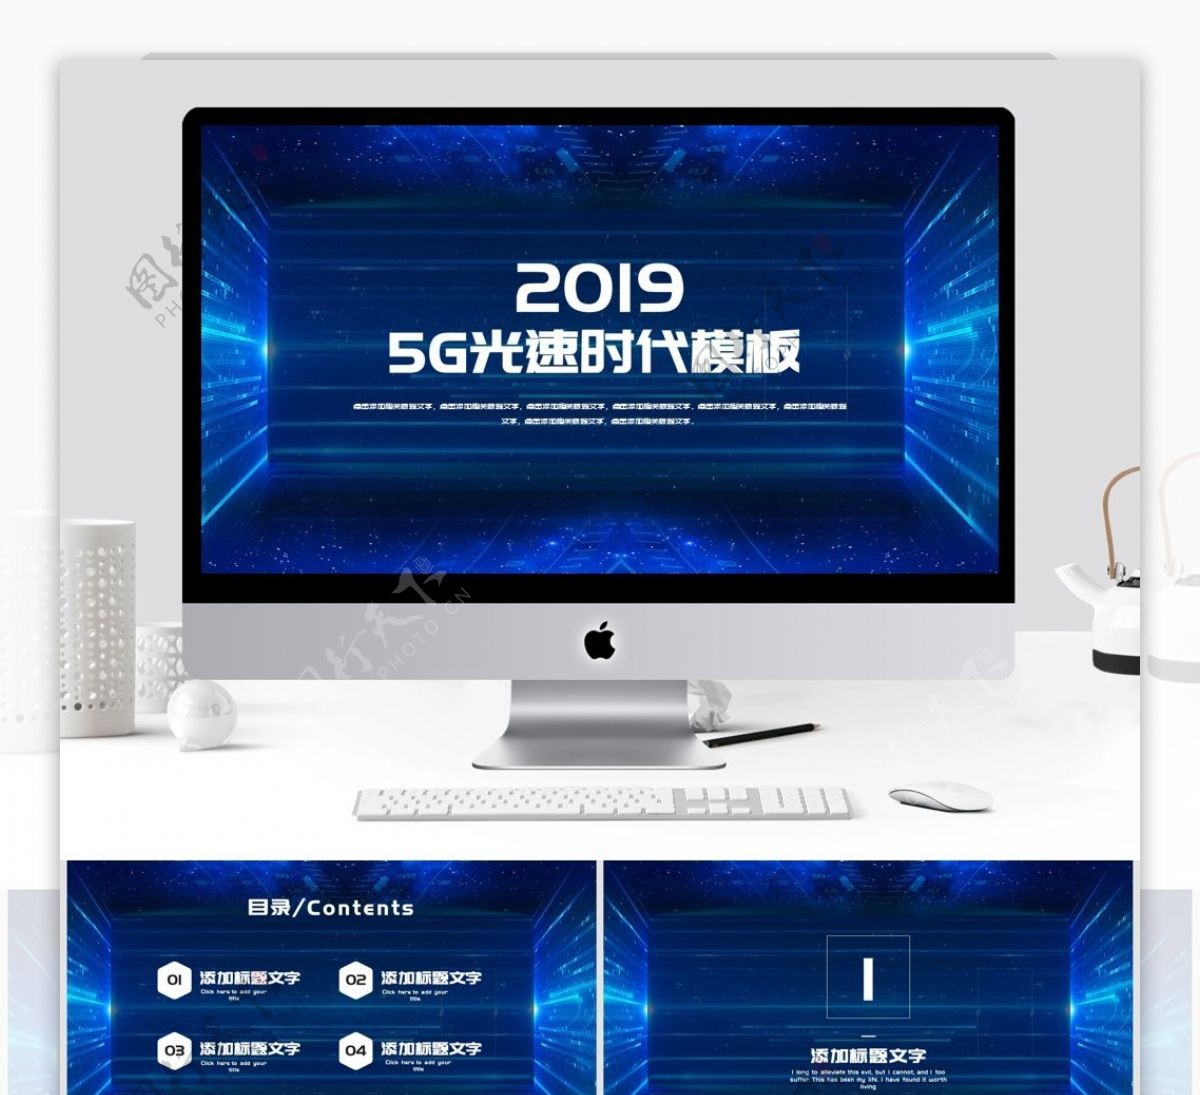 2019蓝色5G光速时代PPT模板